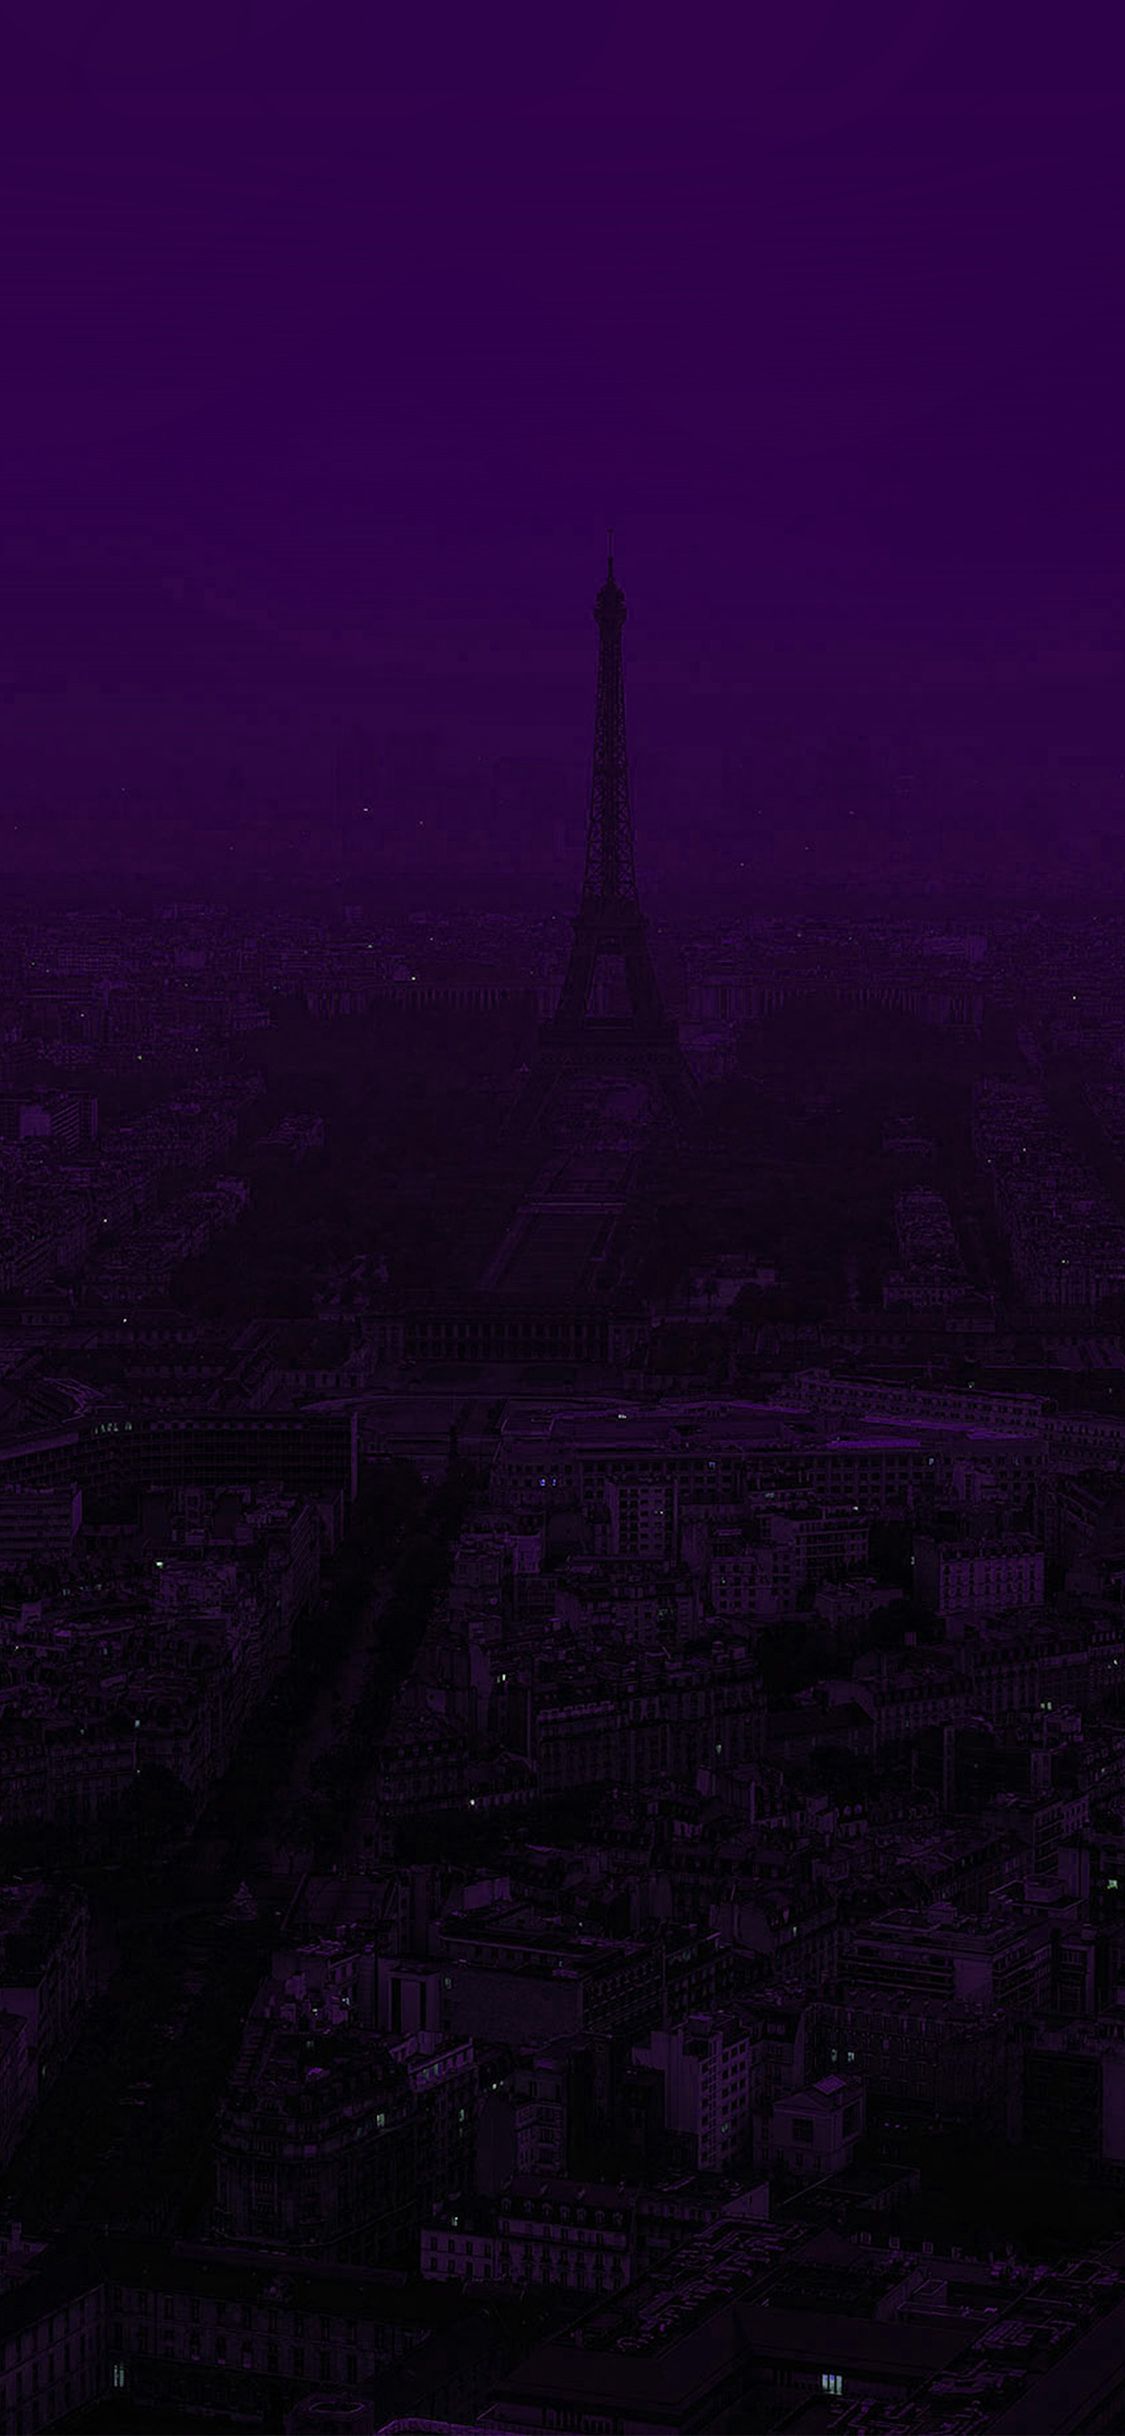 A purple sky with the eiffel tower in it - Dark purple